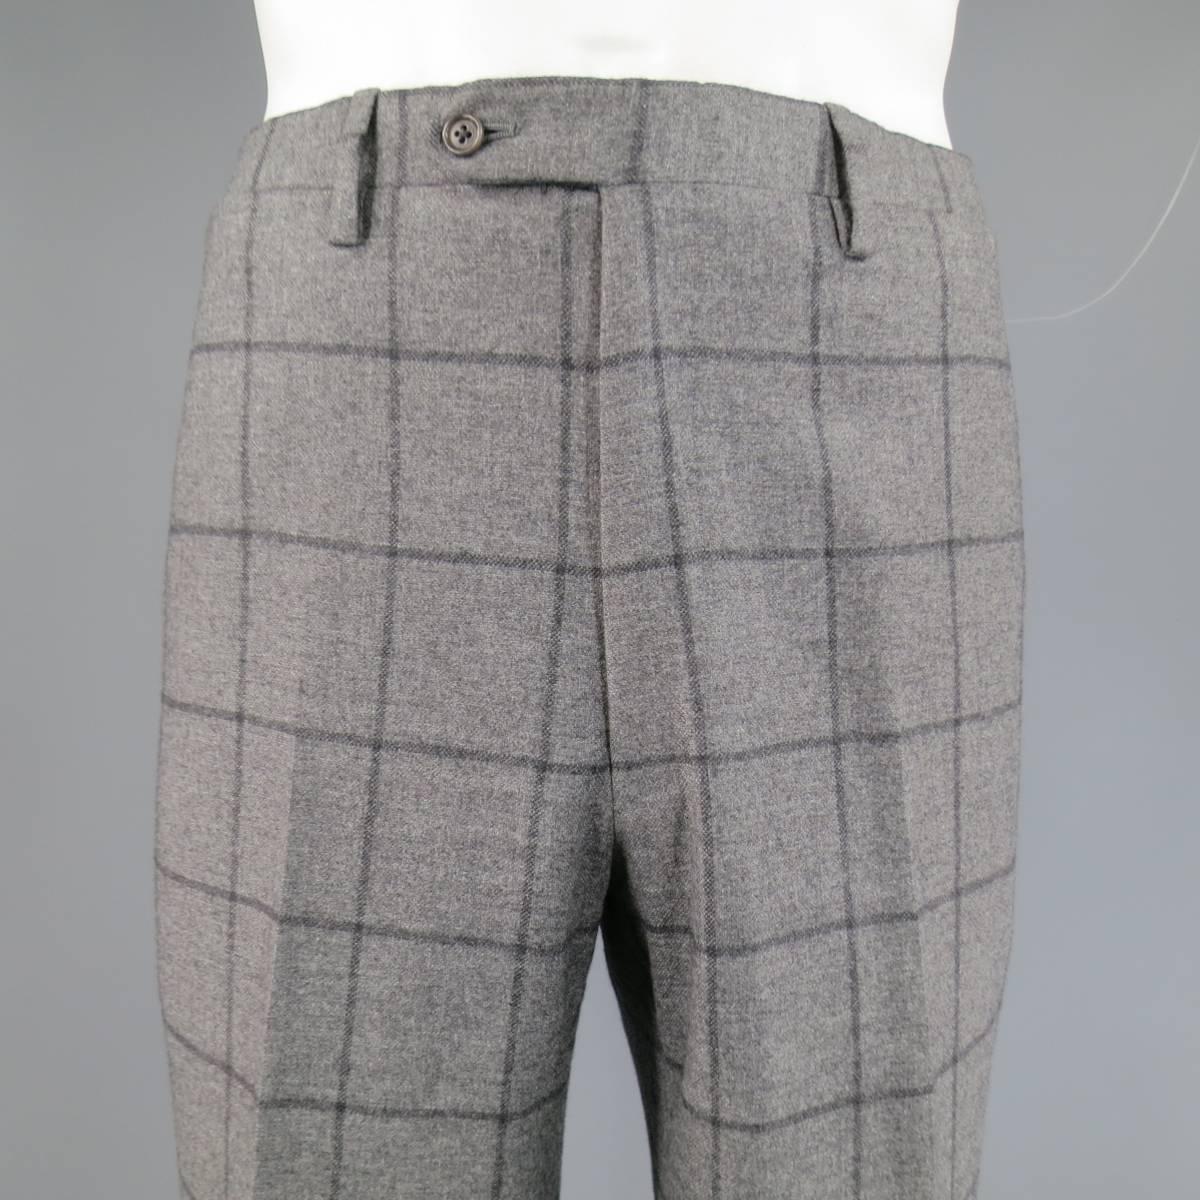 Kiton Men's Suit 46 R 3 Button Gray Windowpane Cashmere Notch Lapel Jacket Pants 2